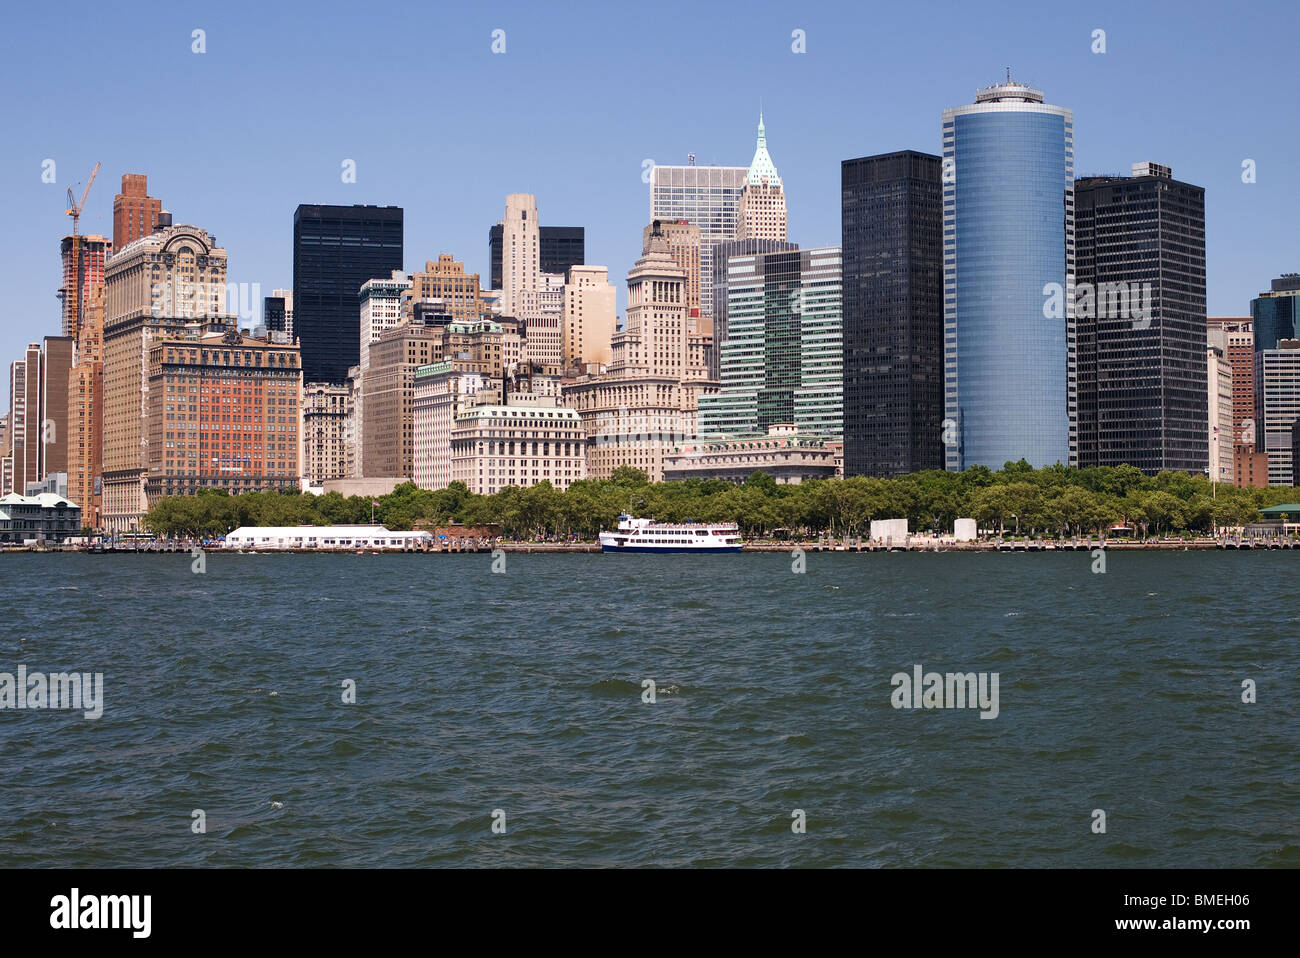 LOWER MANHATTAN SKYLINE, NEW YORK HARBOR Stock Photo